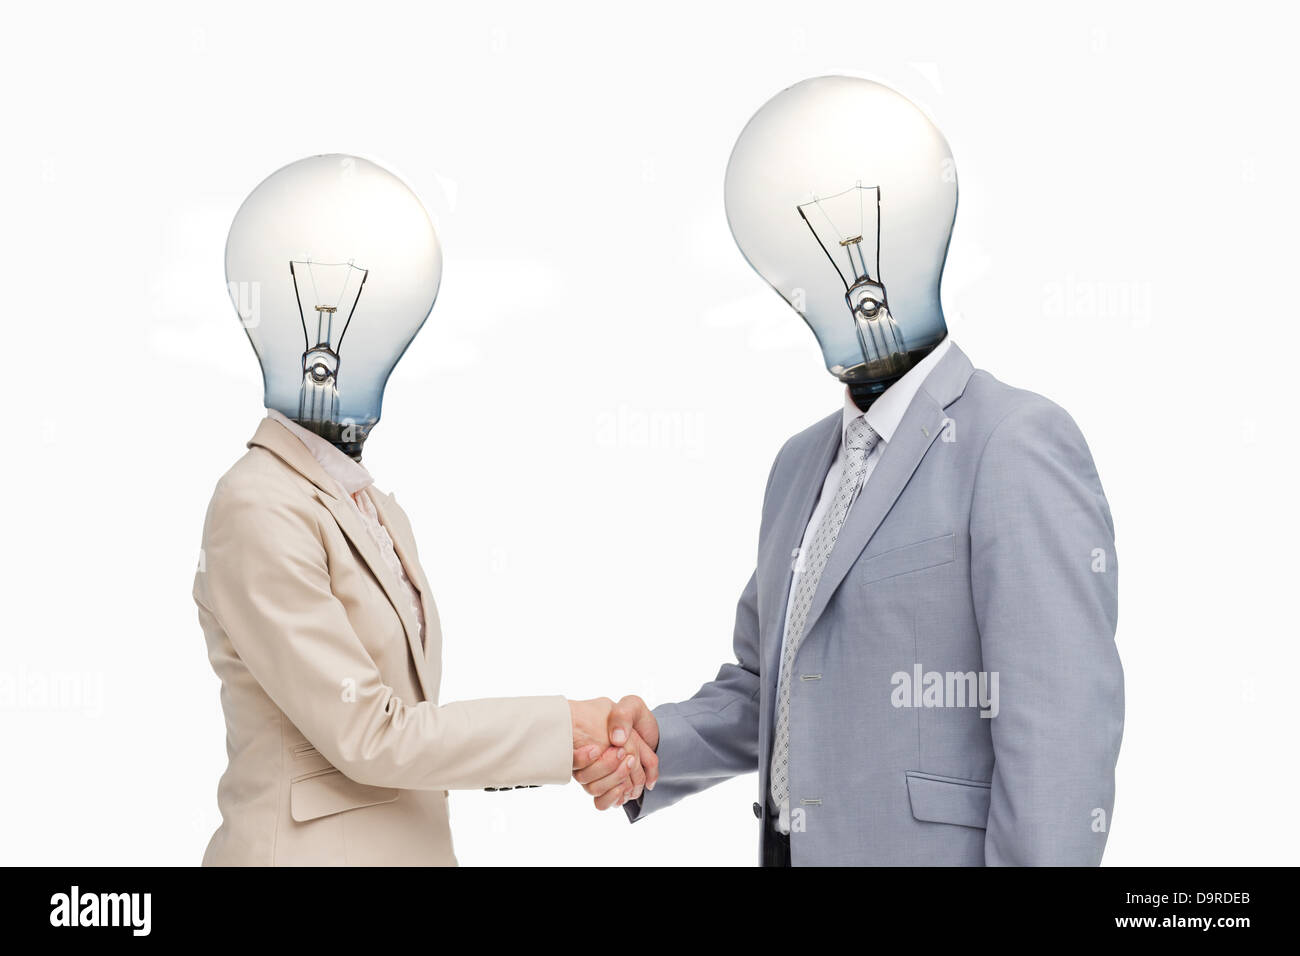 Les gens d'affaires avec des têtes d'ampoule avec une poignée d'accueil Banque D'Images